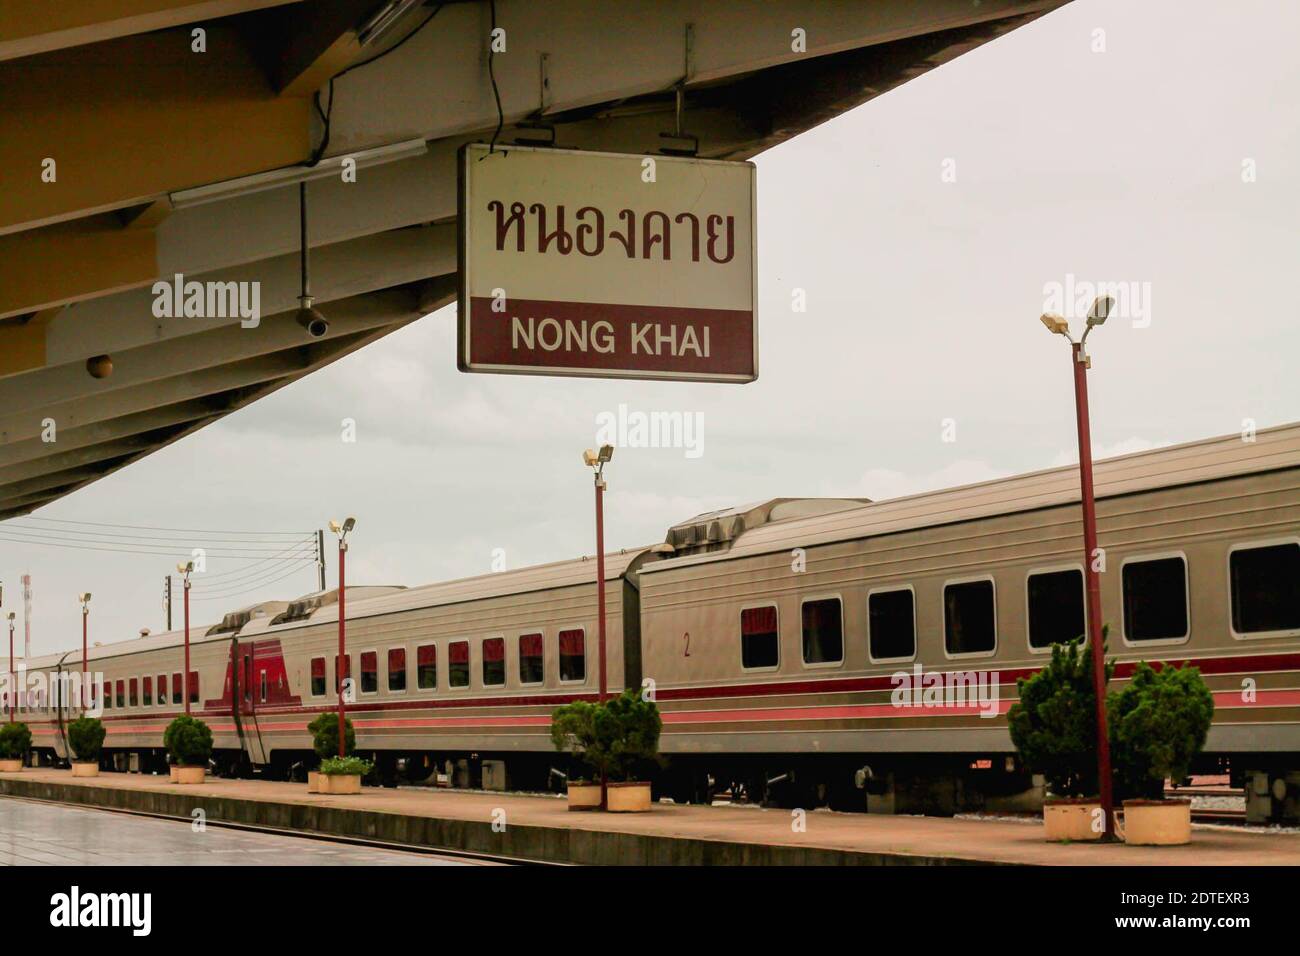 Tren en señal Colgante desde el techo en la plataforma de la estación de ferrocarril Foto de stock